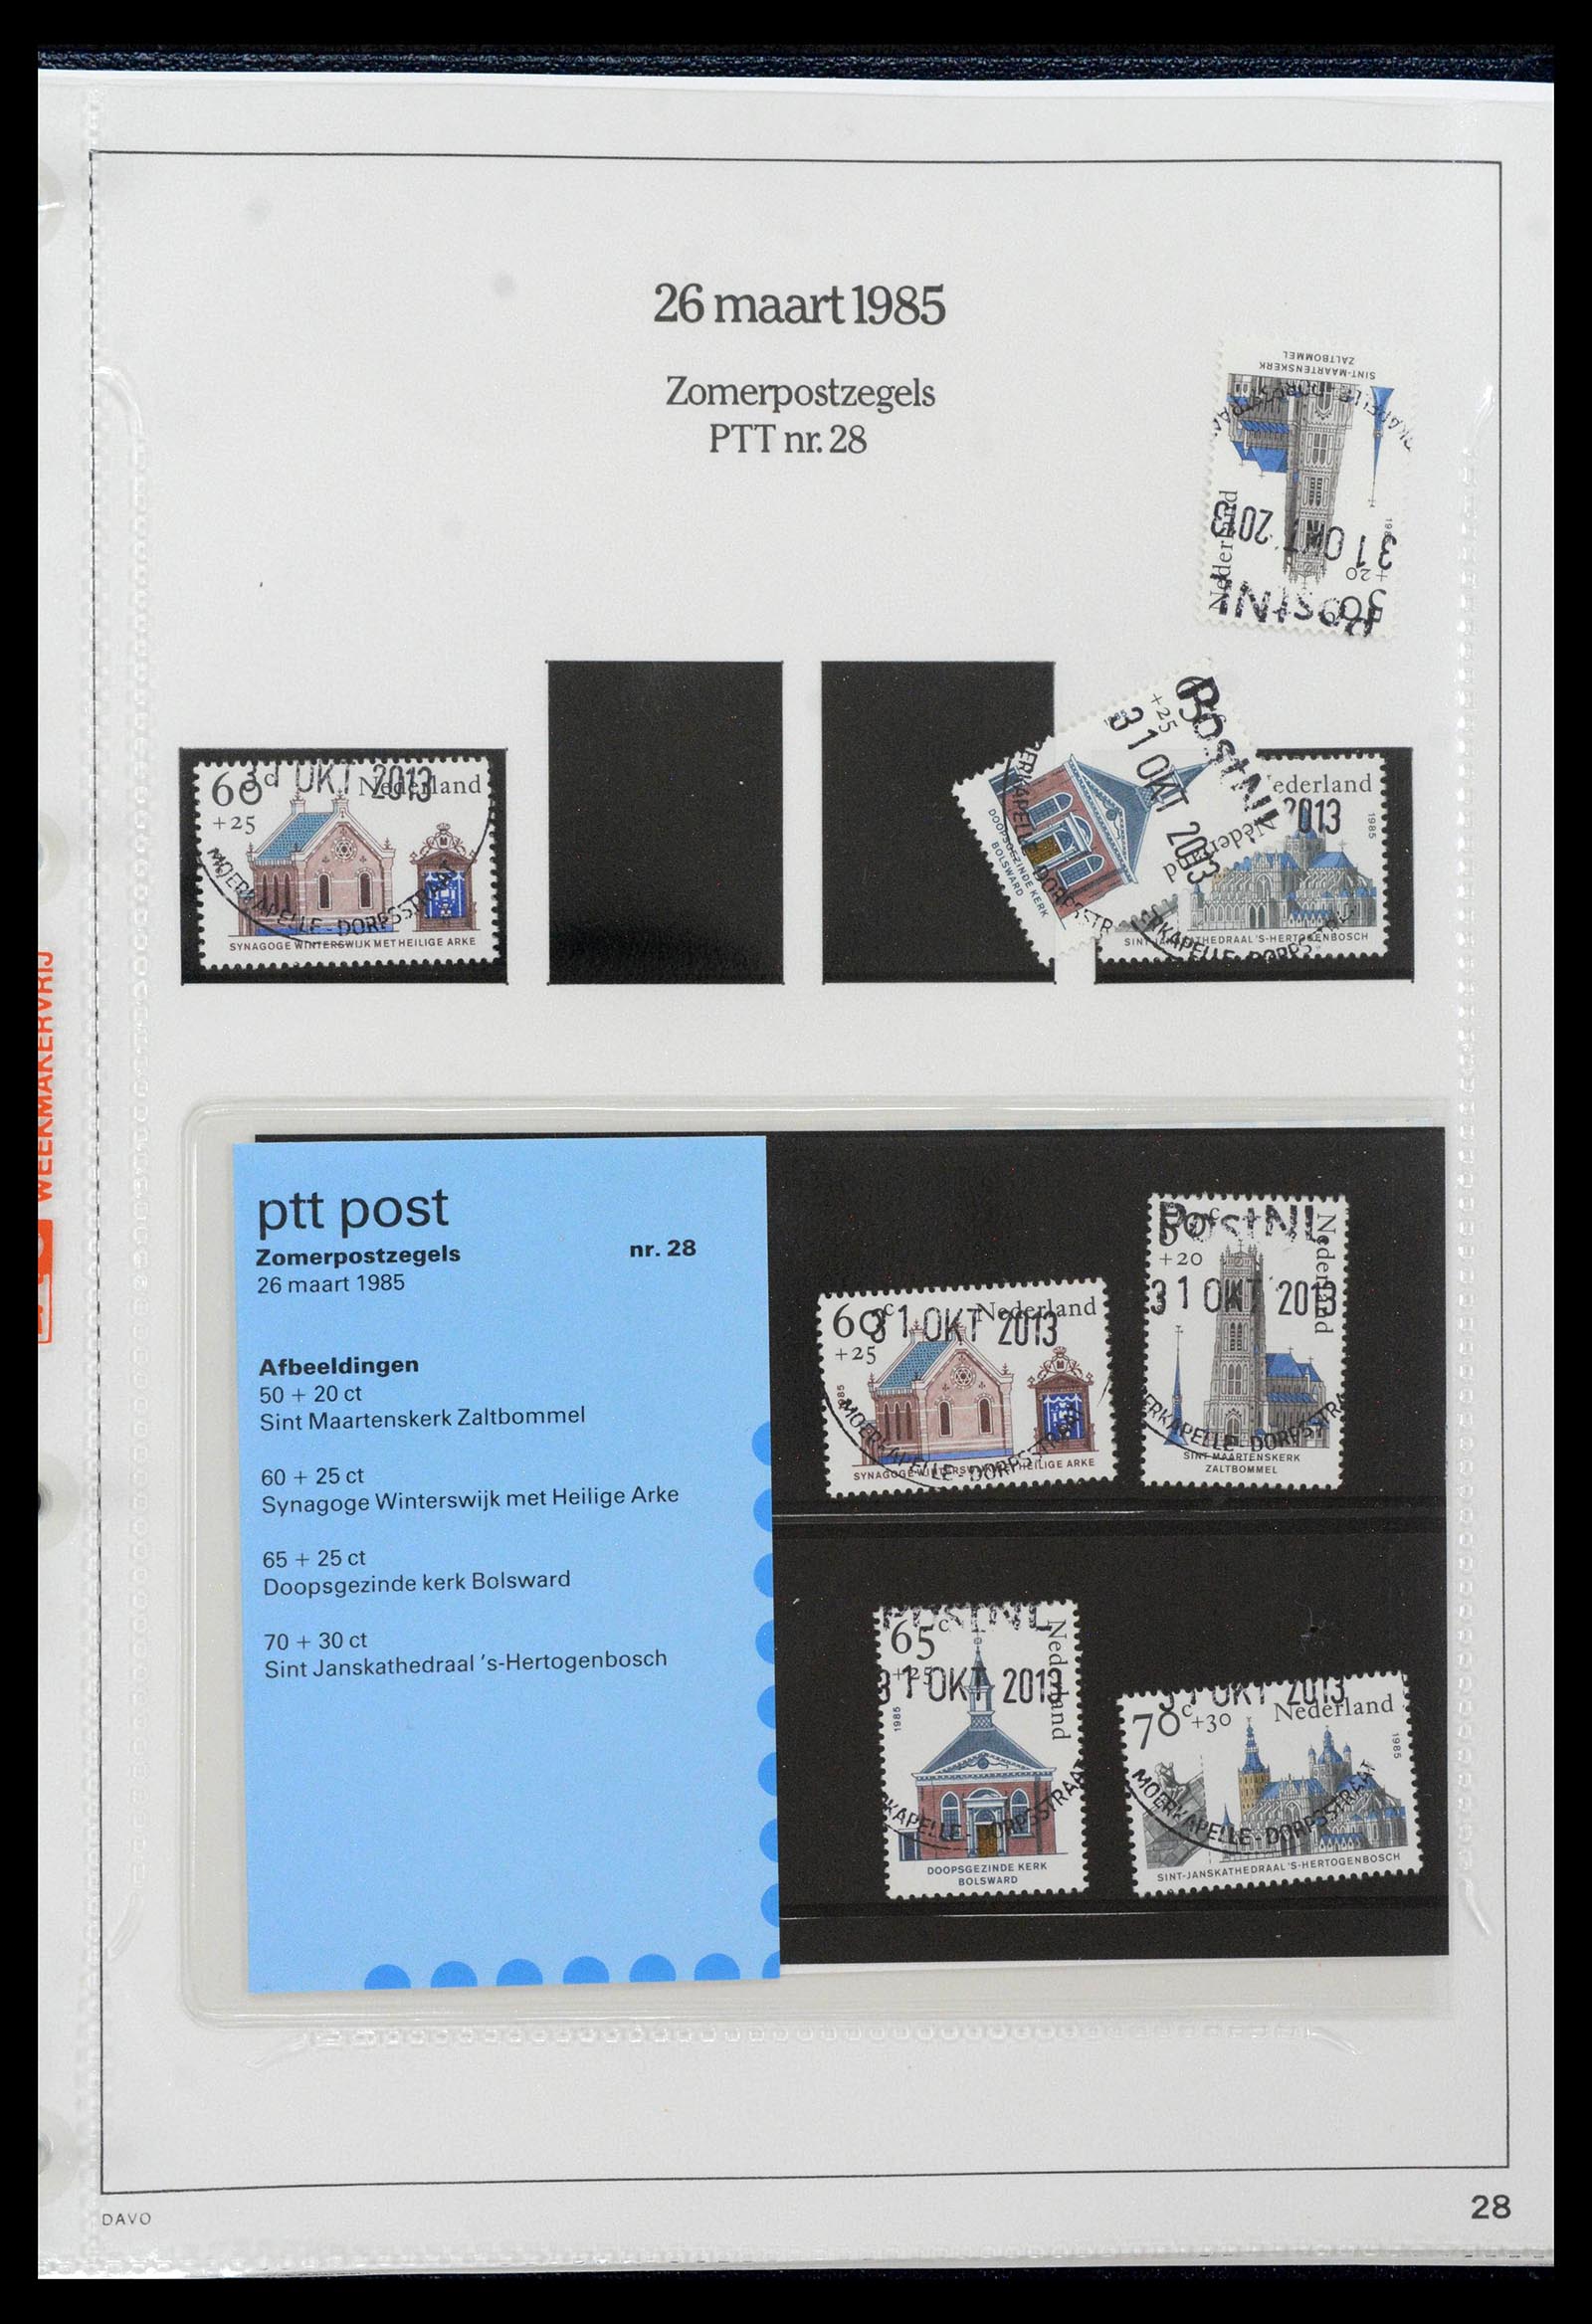 39121 0028 - Stamp collection 39121 Netherlands presentationpacks 1982-2001.